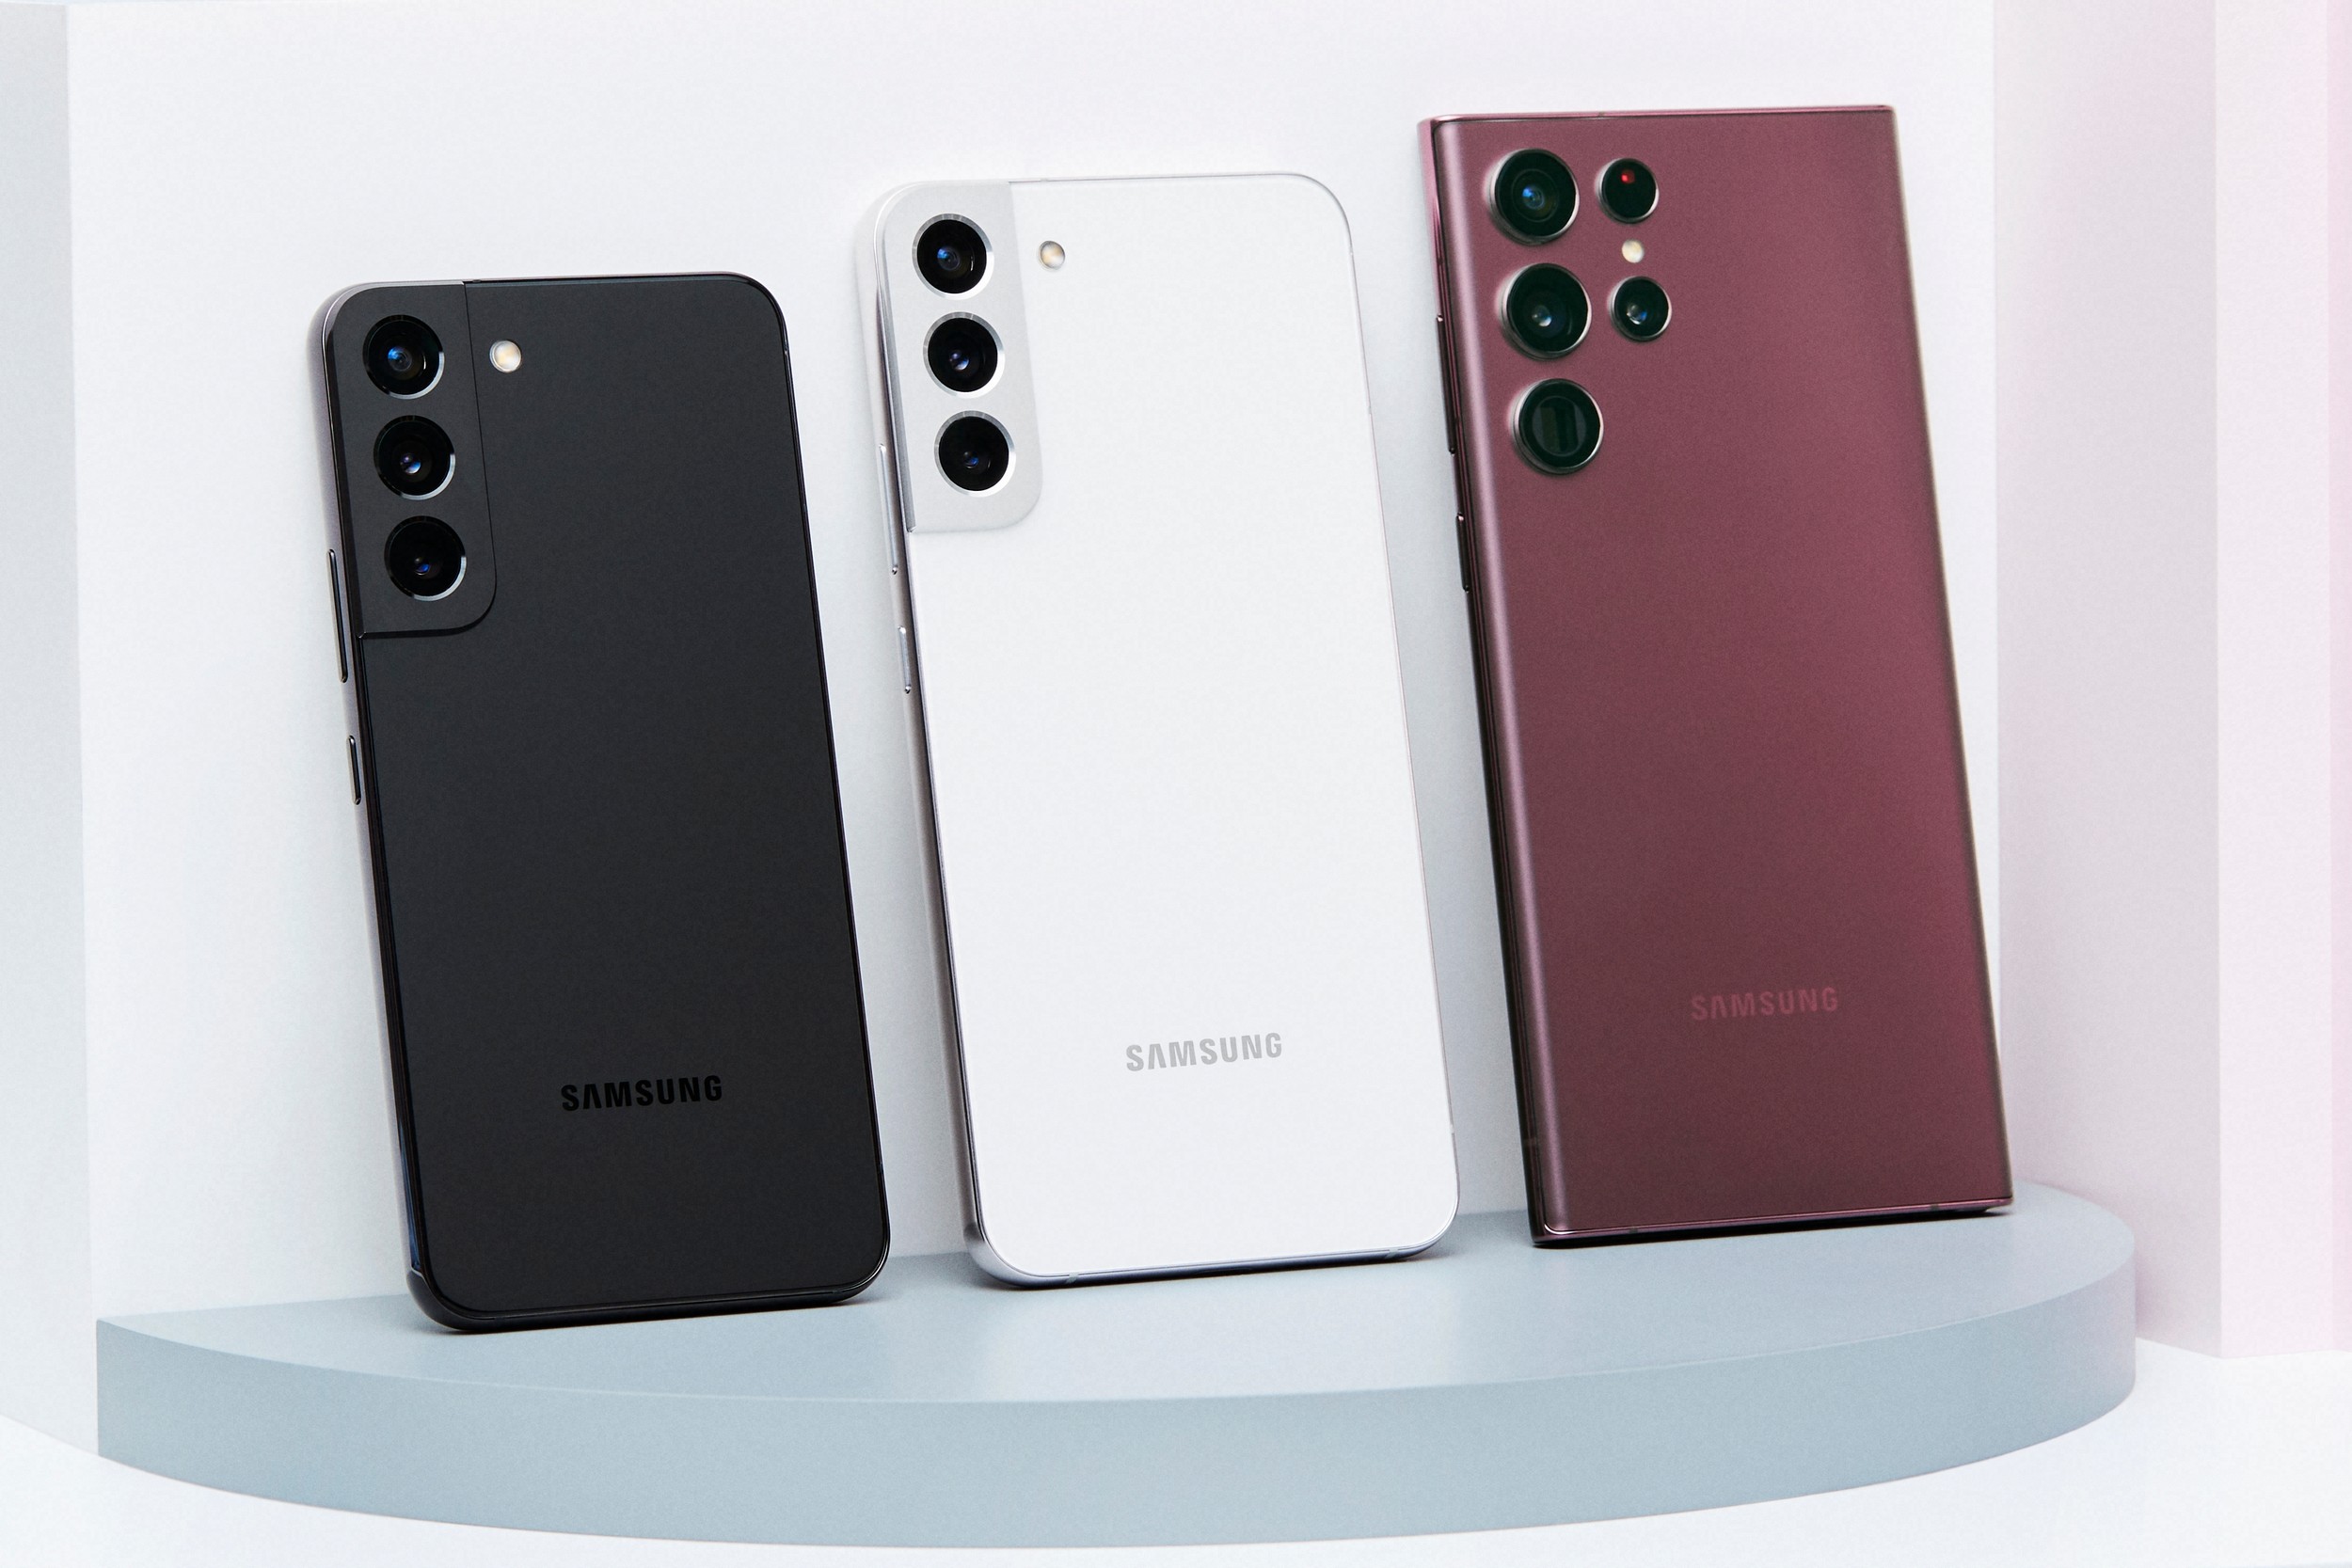 Не виправдали очікувань: продажі серії Samsung Galaxy S22 недовиконані на 30 млн одиниць, хоча до виходу Galaxy S23 залишився лише місяць